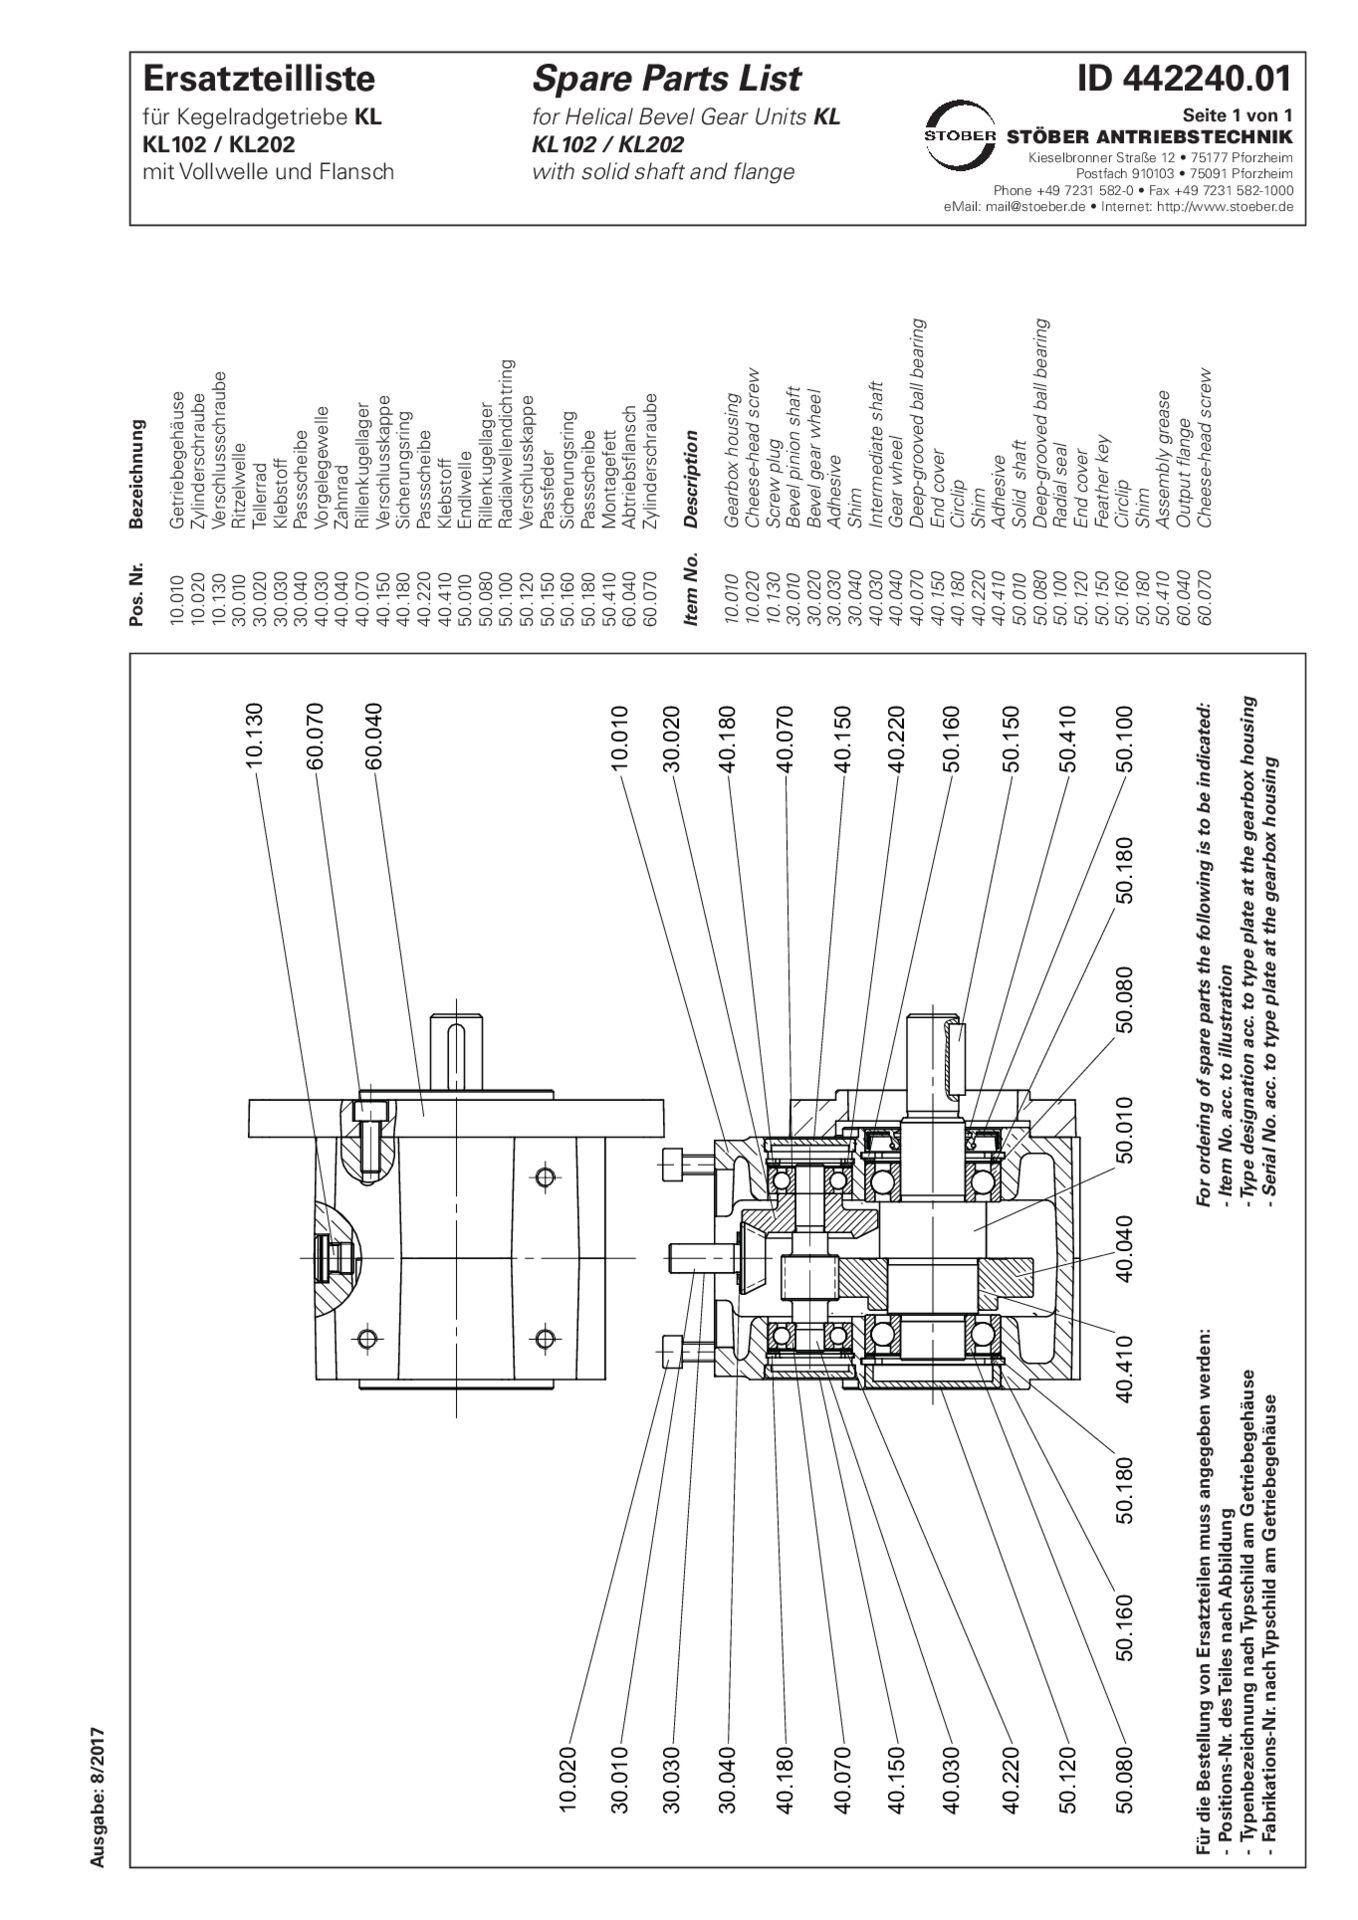 Replacement parts list helical bevel gear units KL102 KL202 PF GFErsatzteilliste Kegelradgetriebe KL102 KL202 PF GF